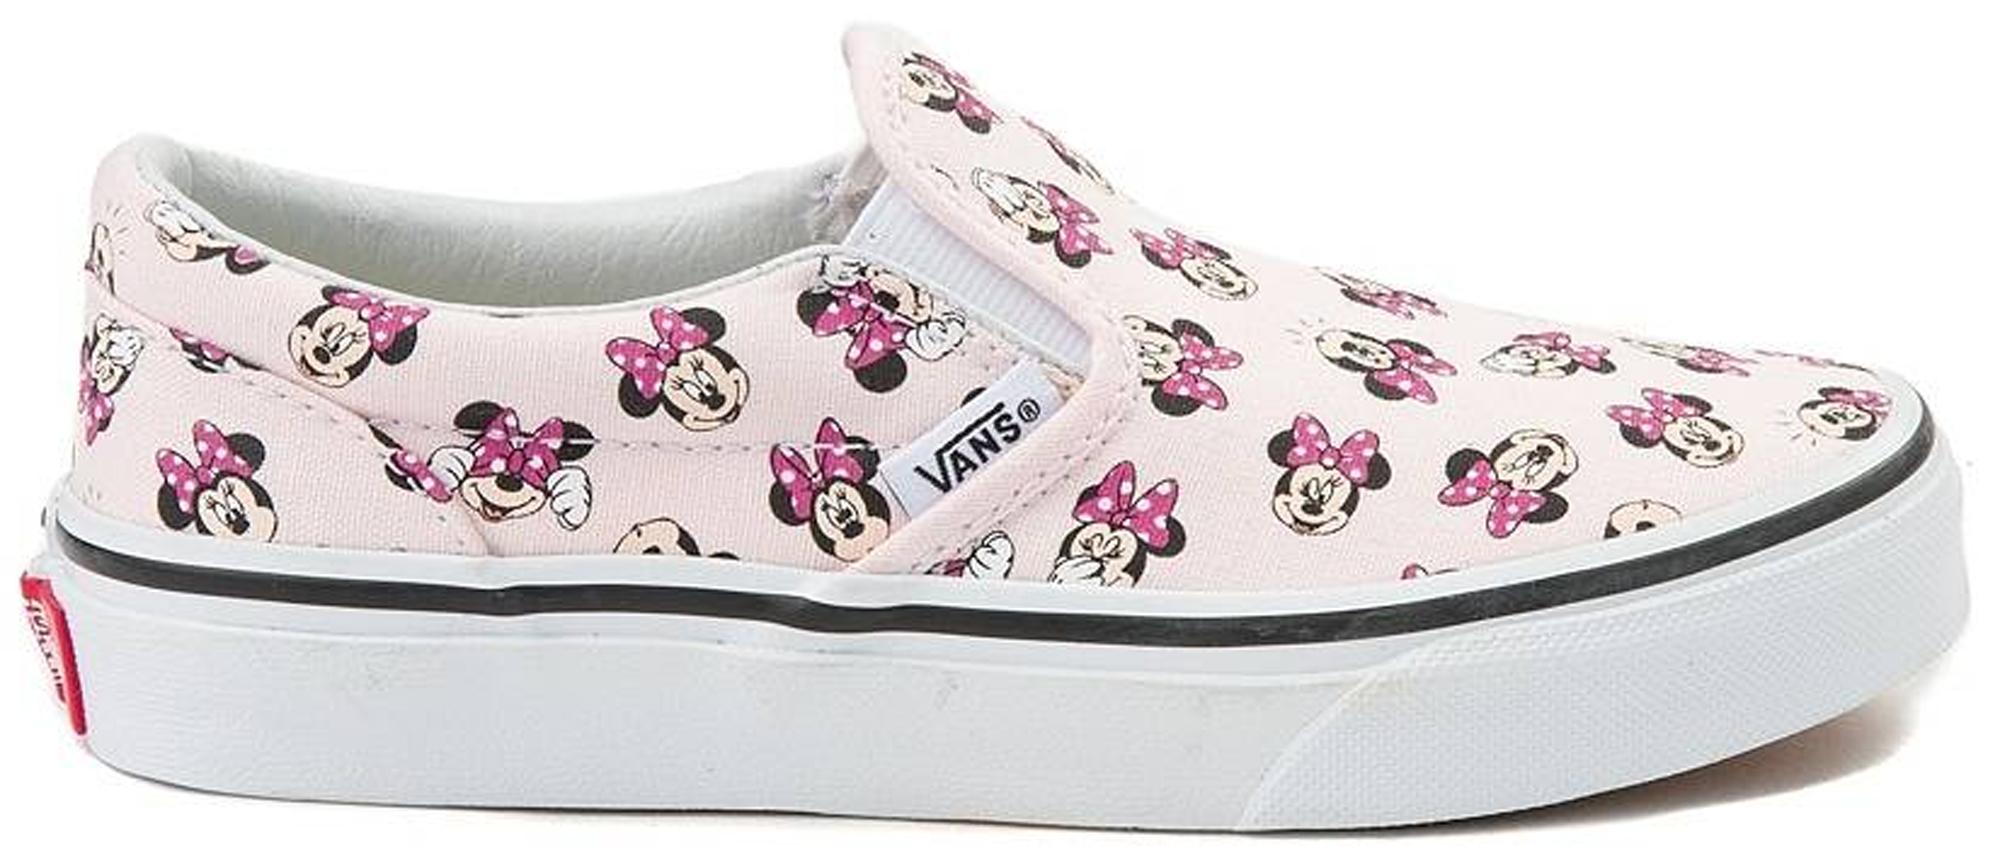 vans minnie mouse shoes cheap online